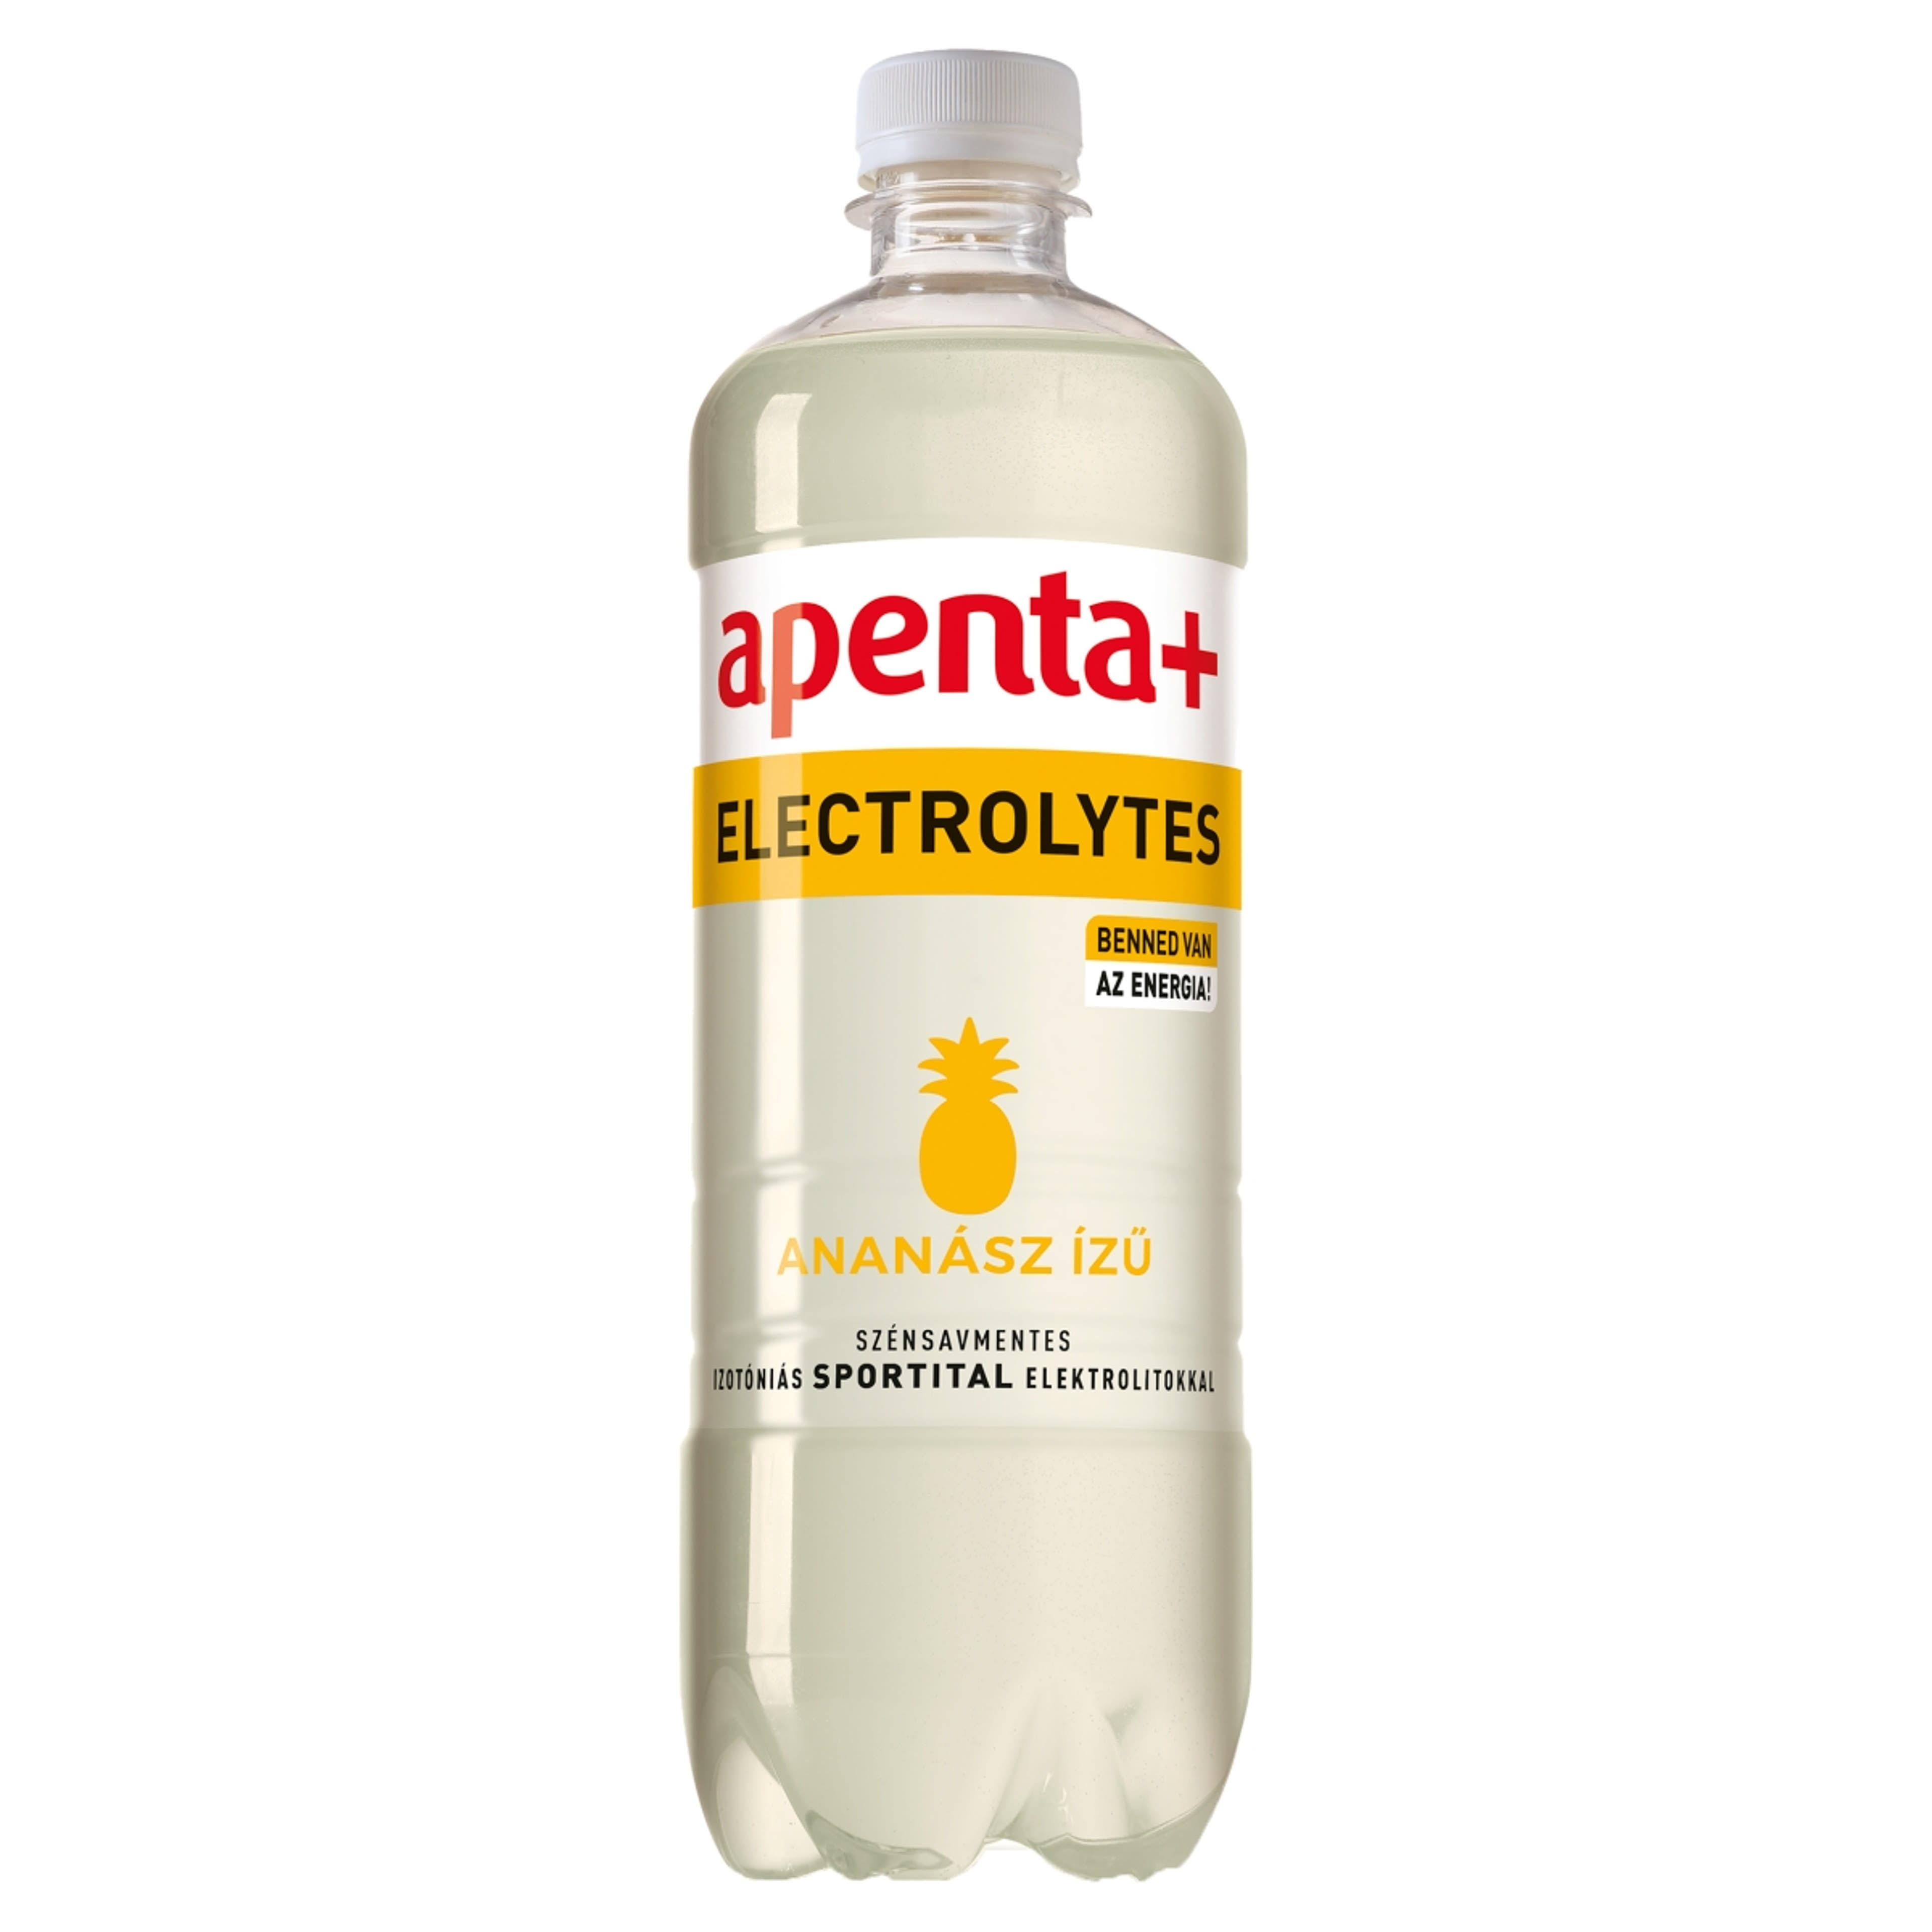 Apenta + electrolytes üdítőital - 750 ml